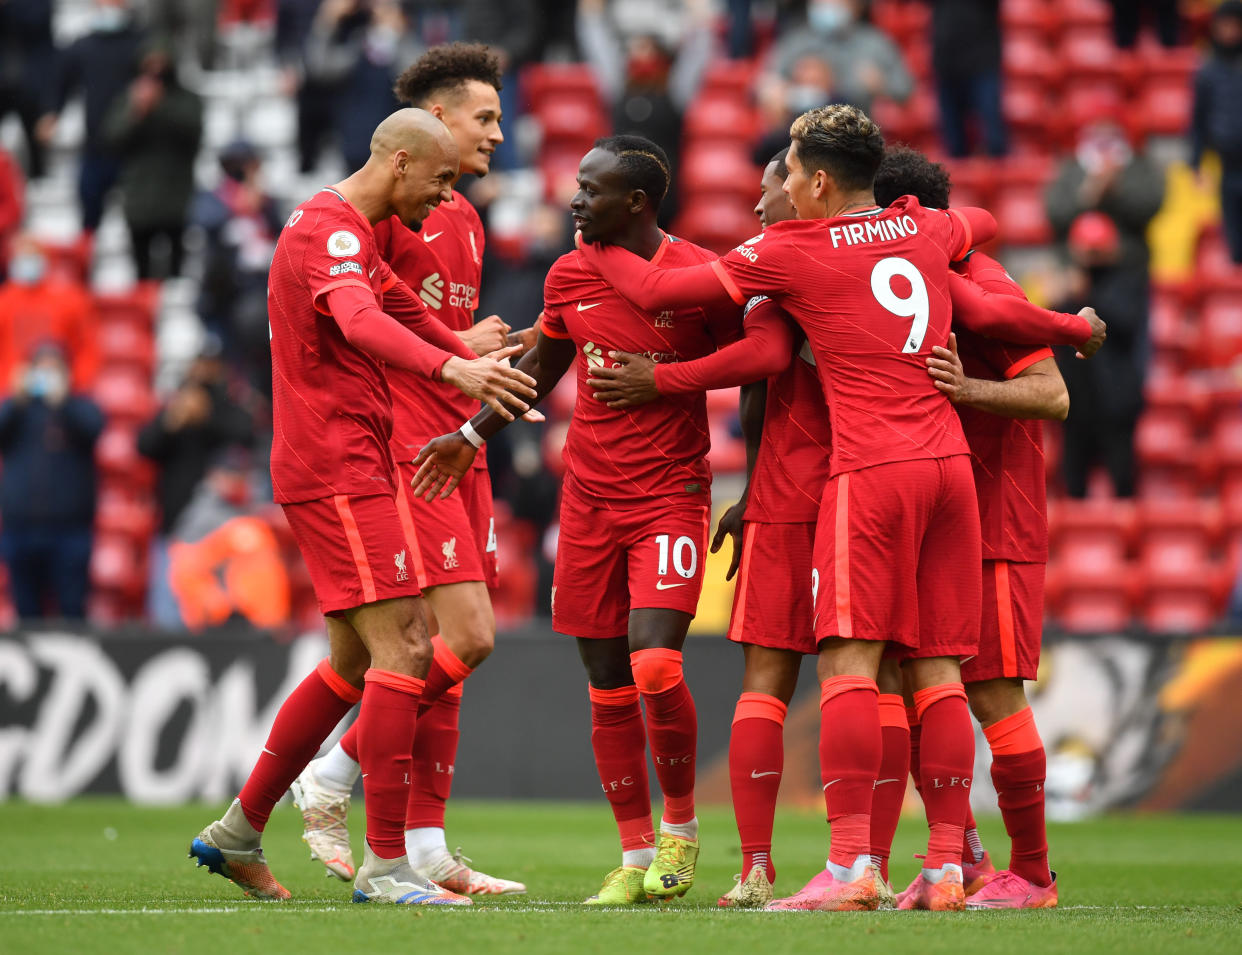 Liverpool's Sadio Mane celebrates scoring their second goal with teammates.